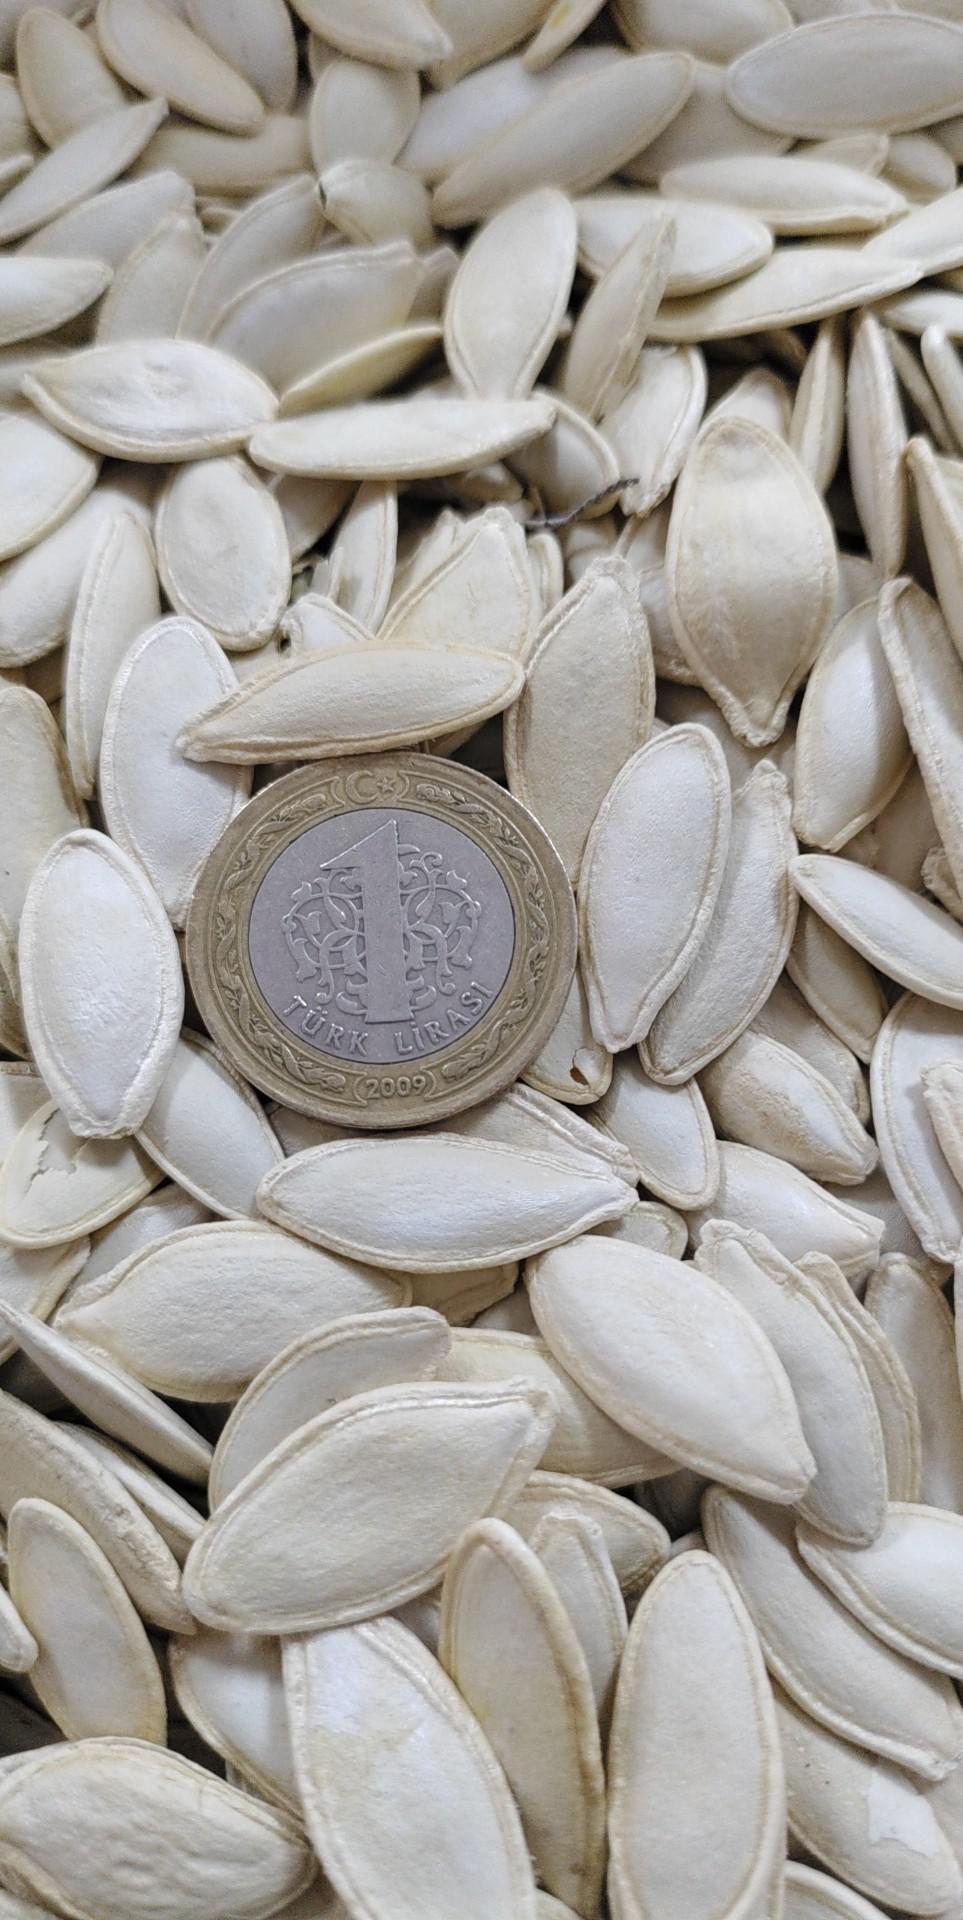 Kabak Çekirdeği - Üretici Gökhan Doğan 35 tl fiyat ile 6.000 kilogram kabak çekirdeği  satmak istiyor